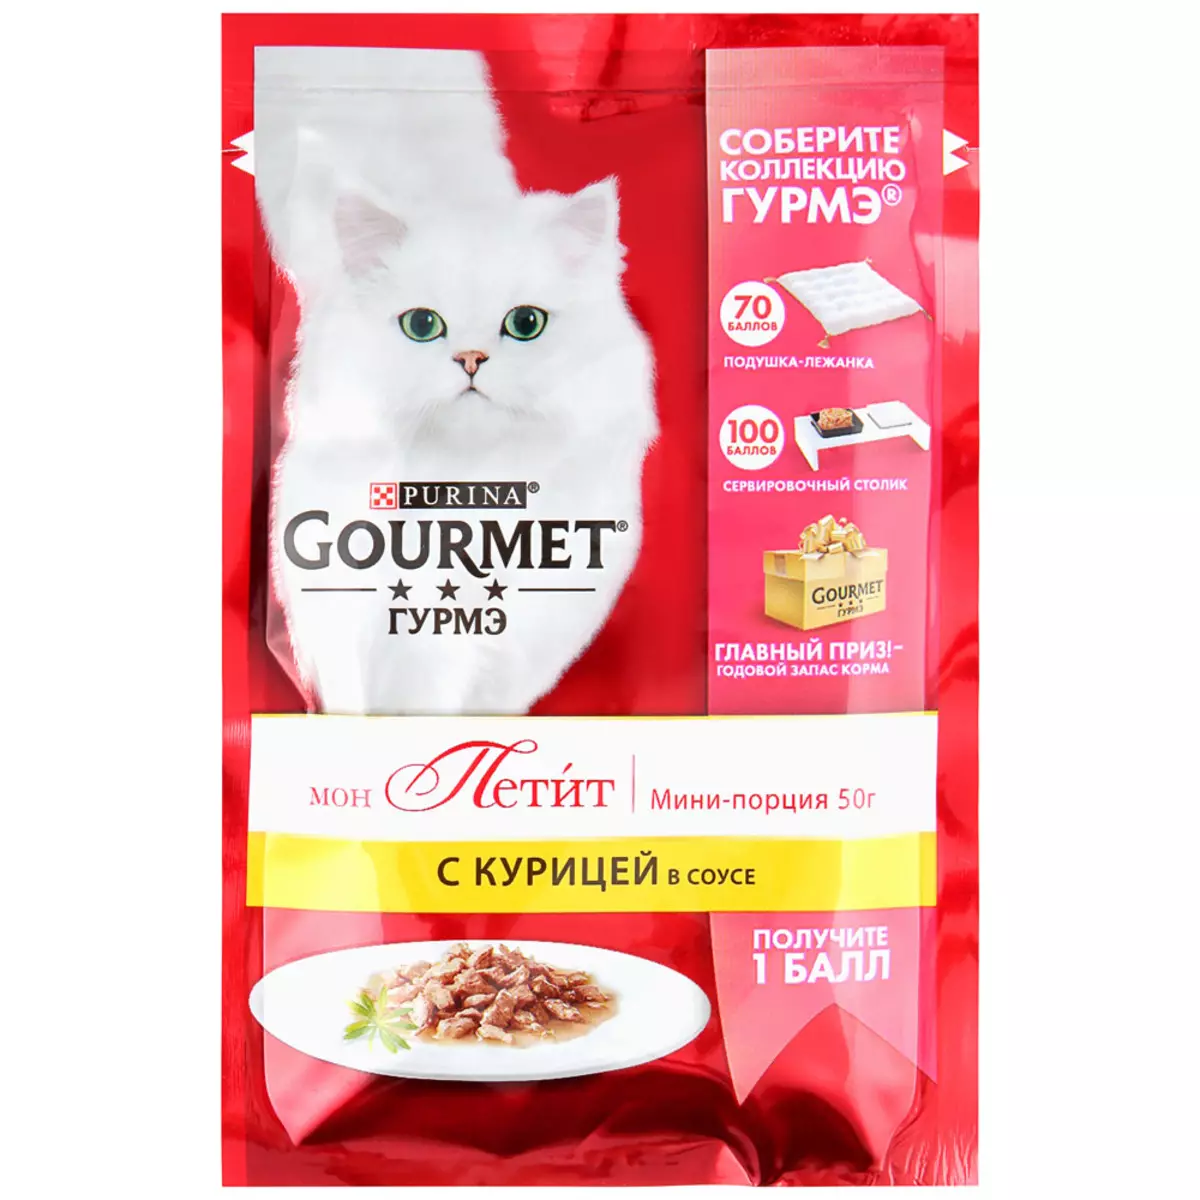 Gourmet: Cat Feed ug Purina Kittens, basa nga mga pates ug uban pang mga feline de lata nga pagkaon, ilang komposisyon, mga review 22711_37